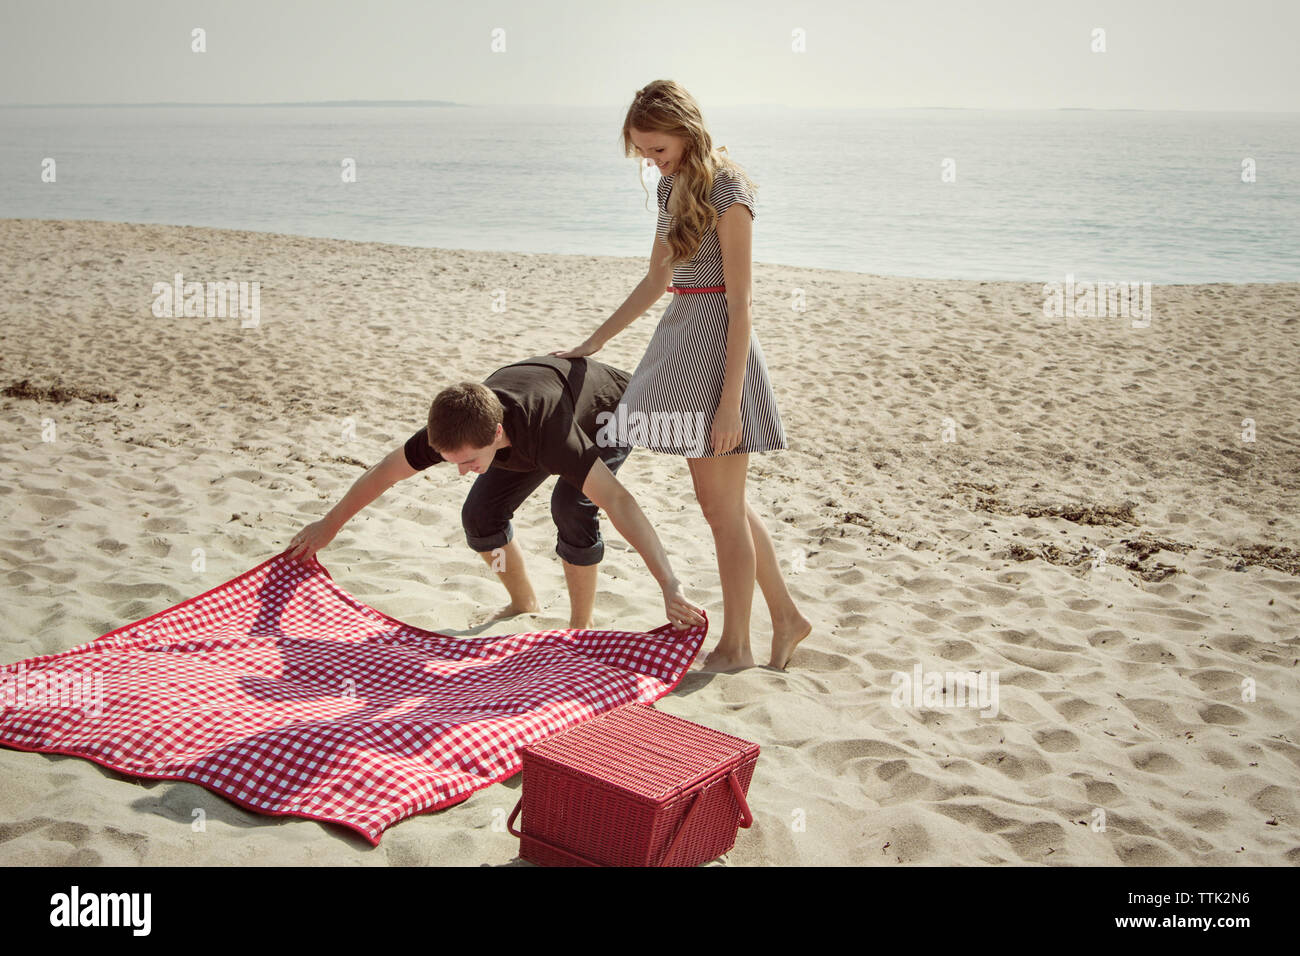 Freundin suchen Bei man die Picknickdecke auf Sand am Strand  Stockfotografie - Alamy